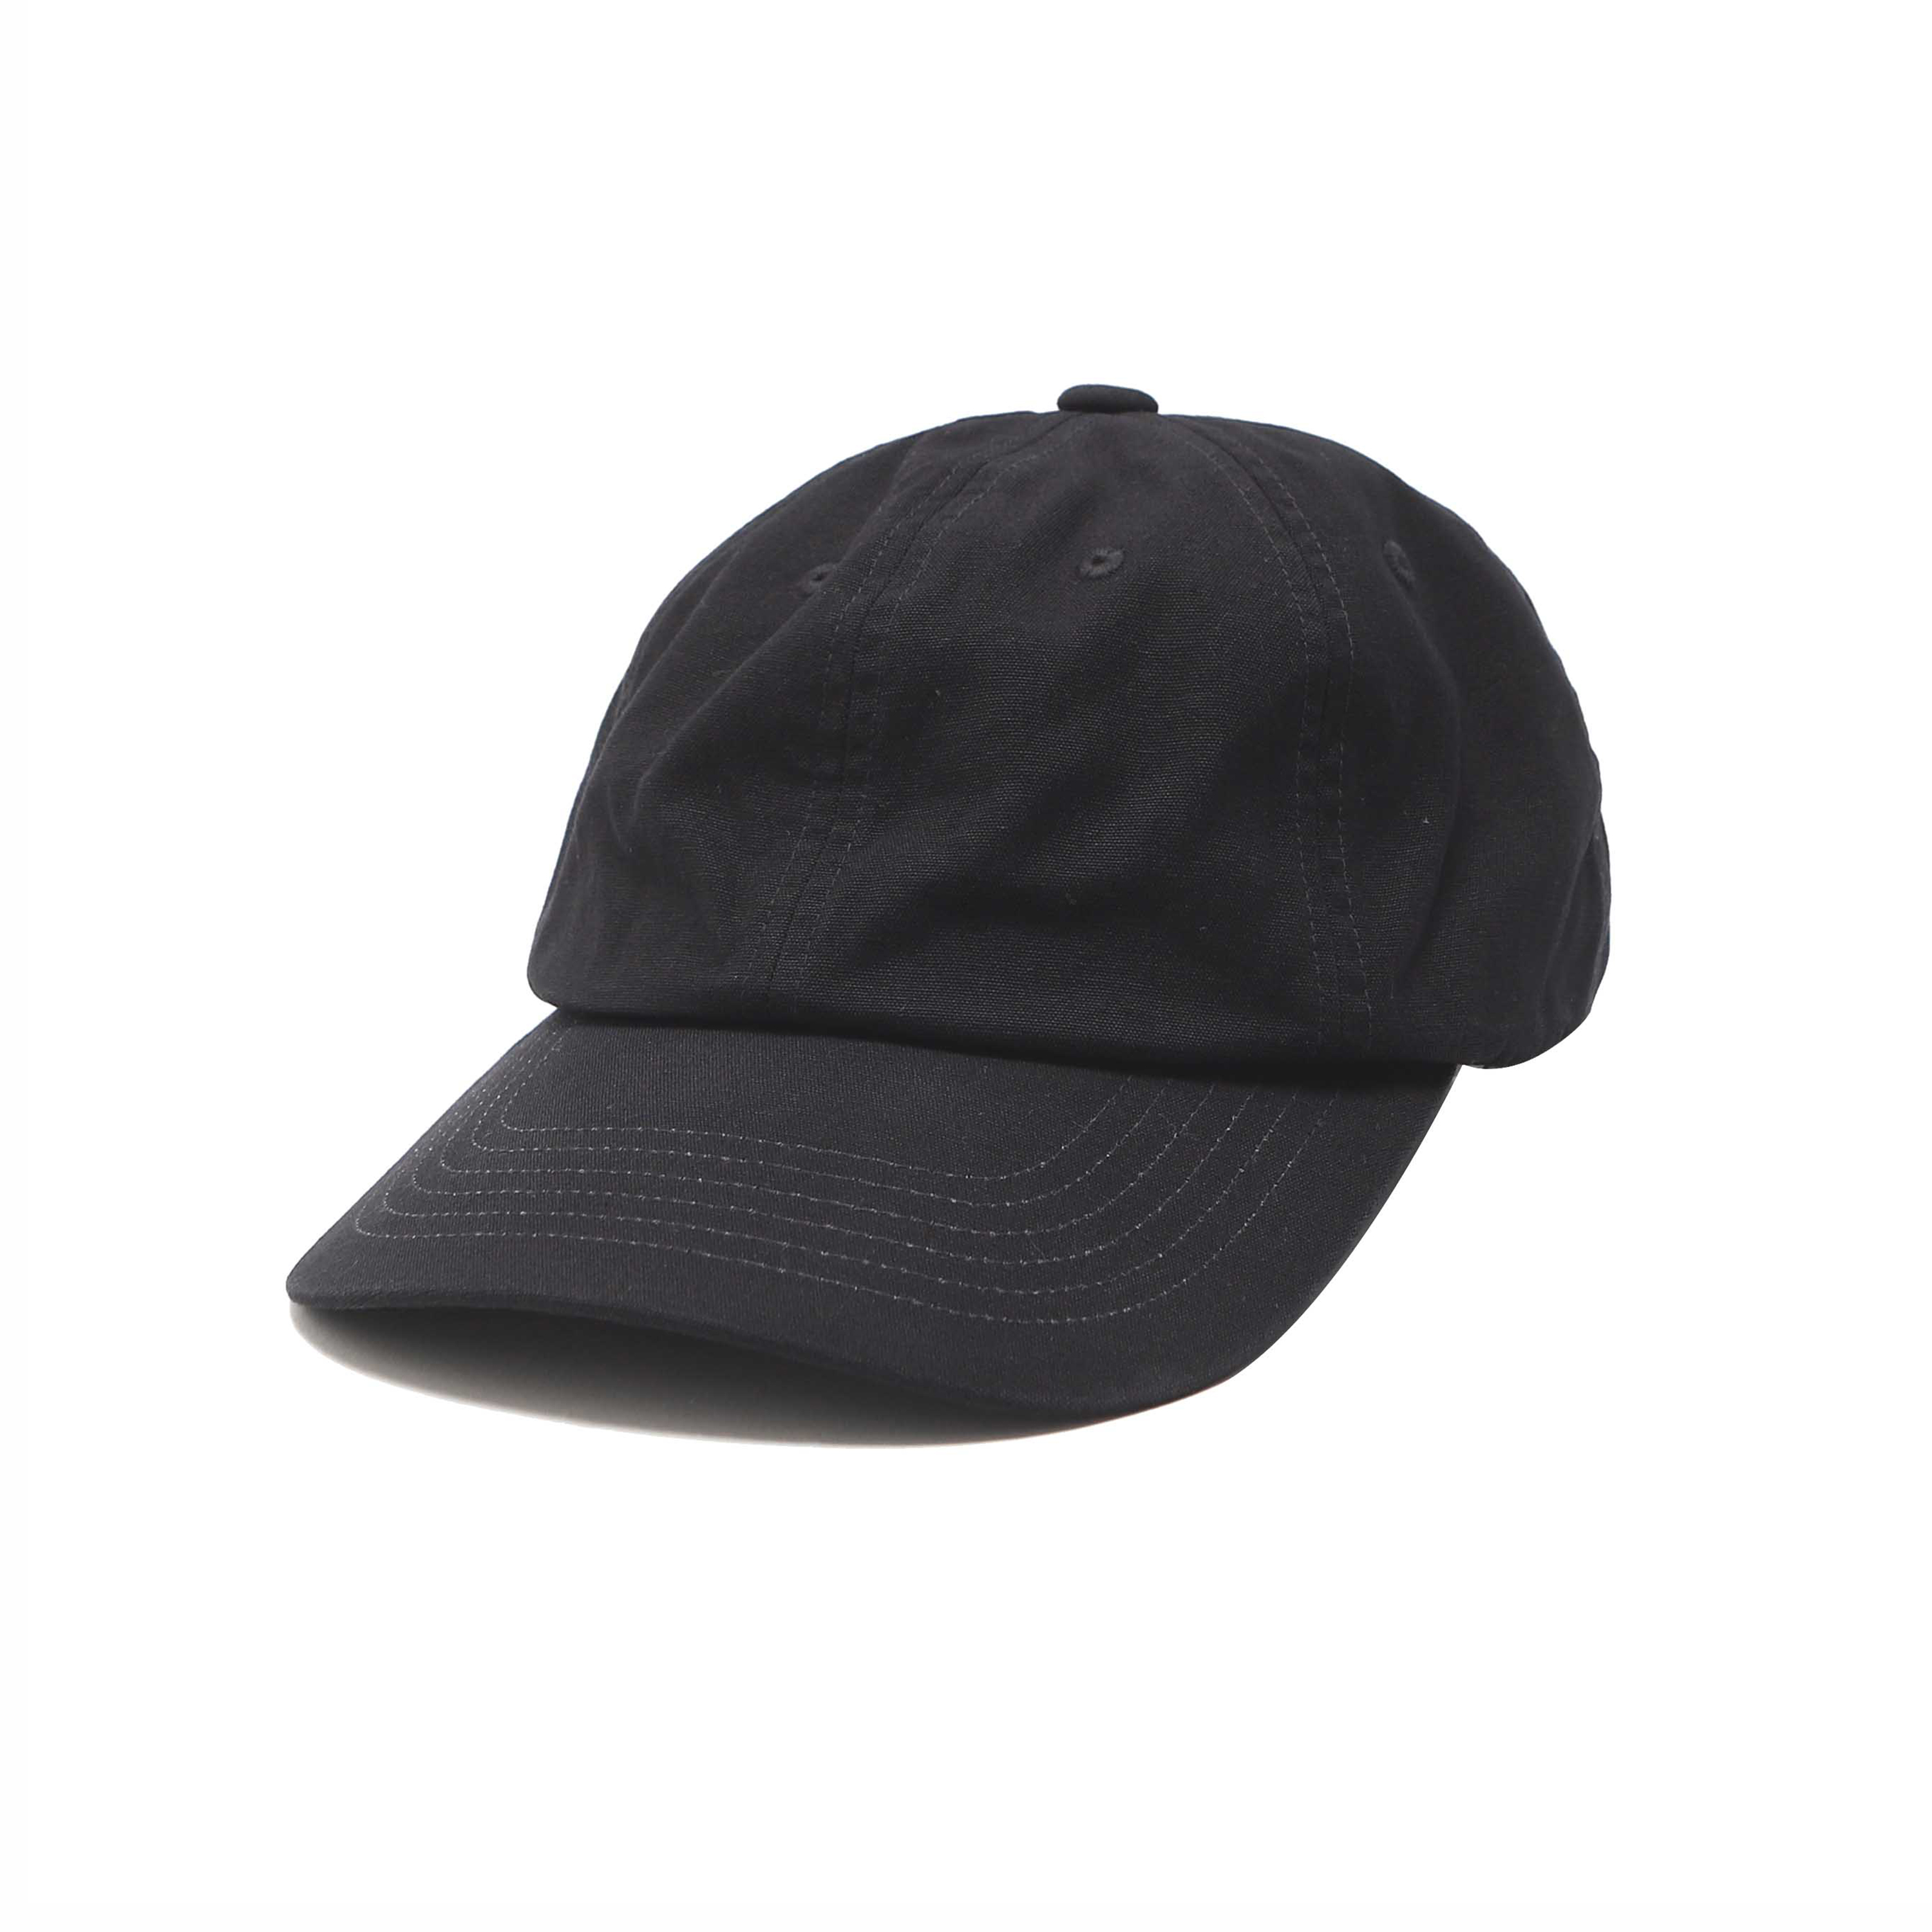 COTTON CAP - BLACK